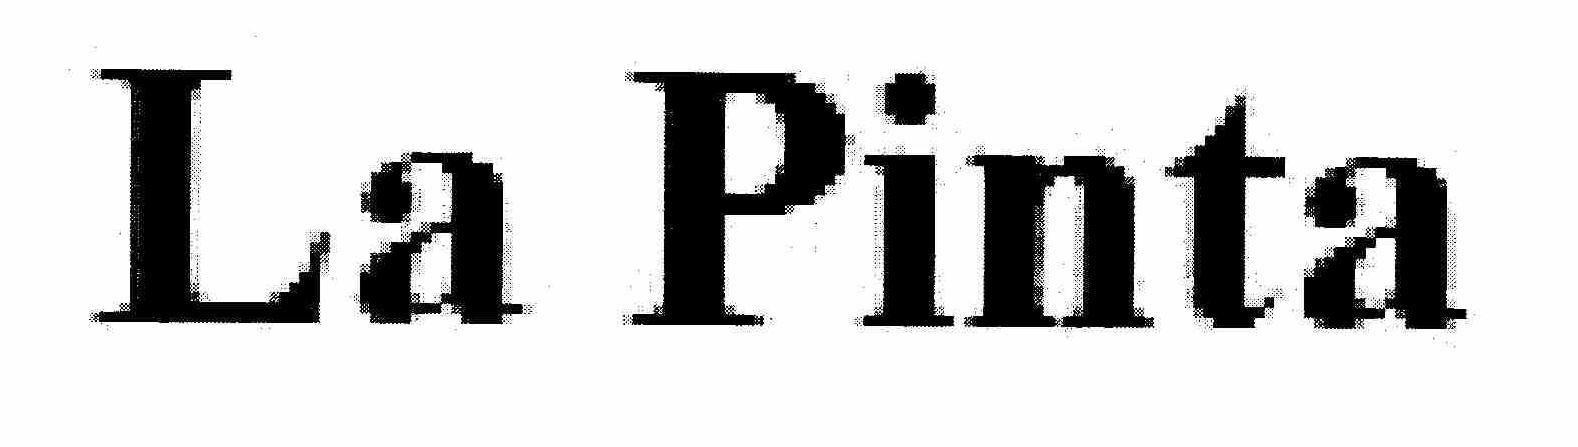 Trademark Logo LA PINTA